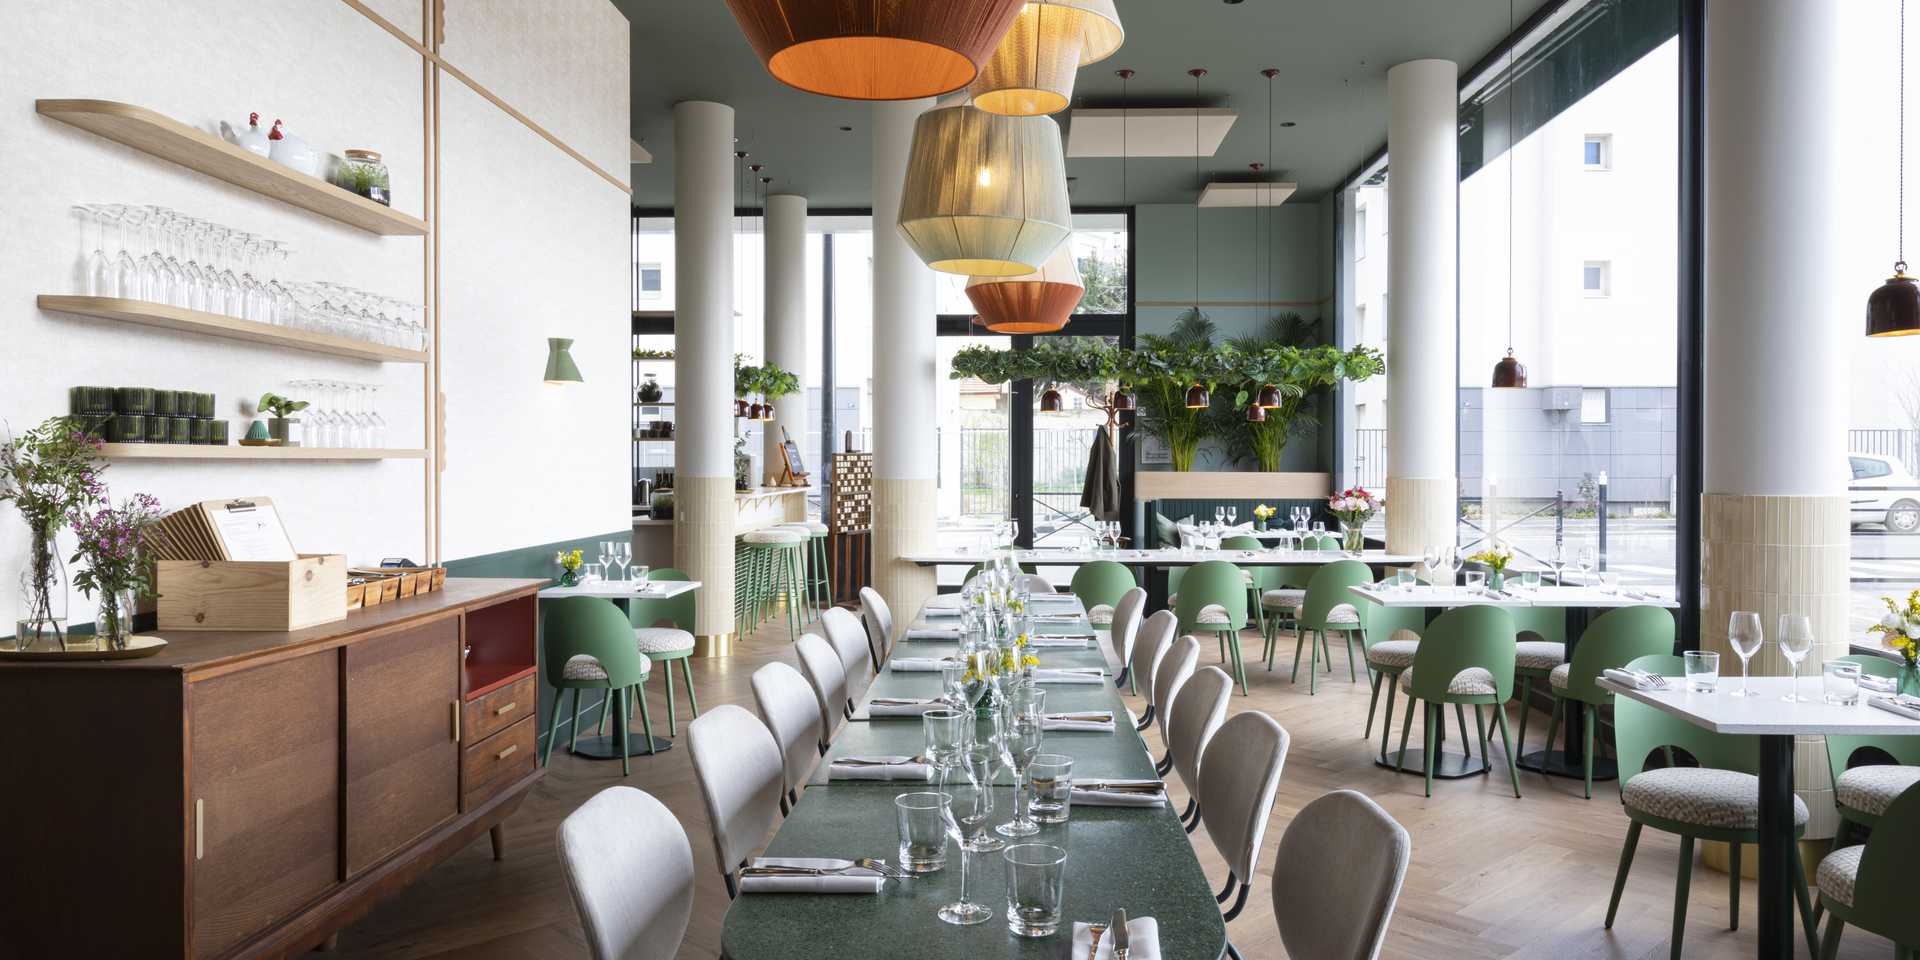 Restaurant bistronomique à Bruxelles aménagé par un architecte d'intérieur